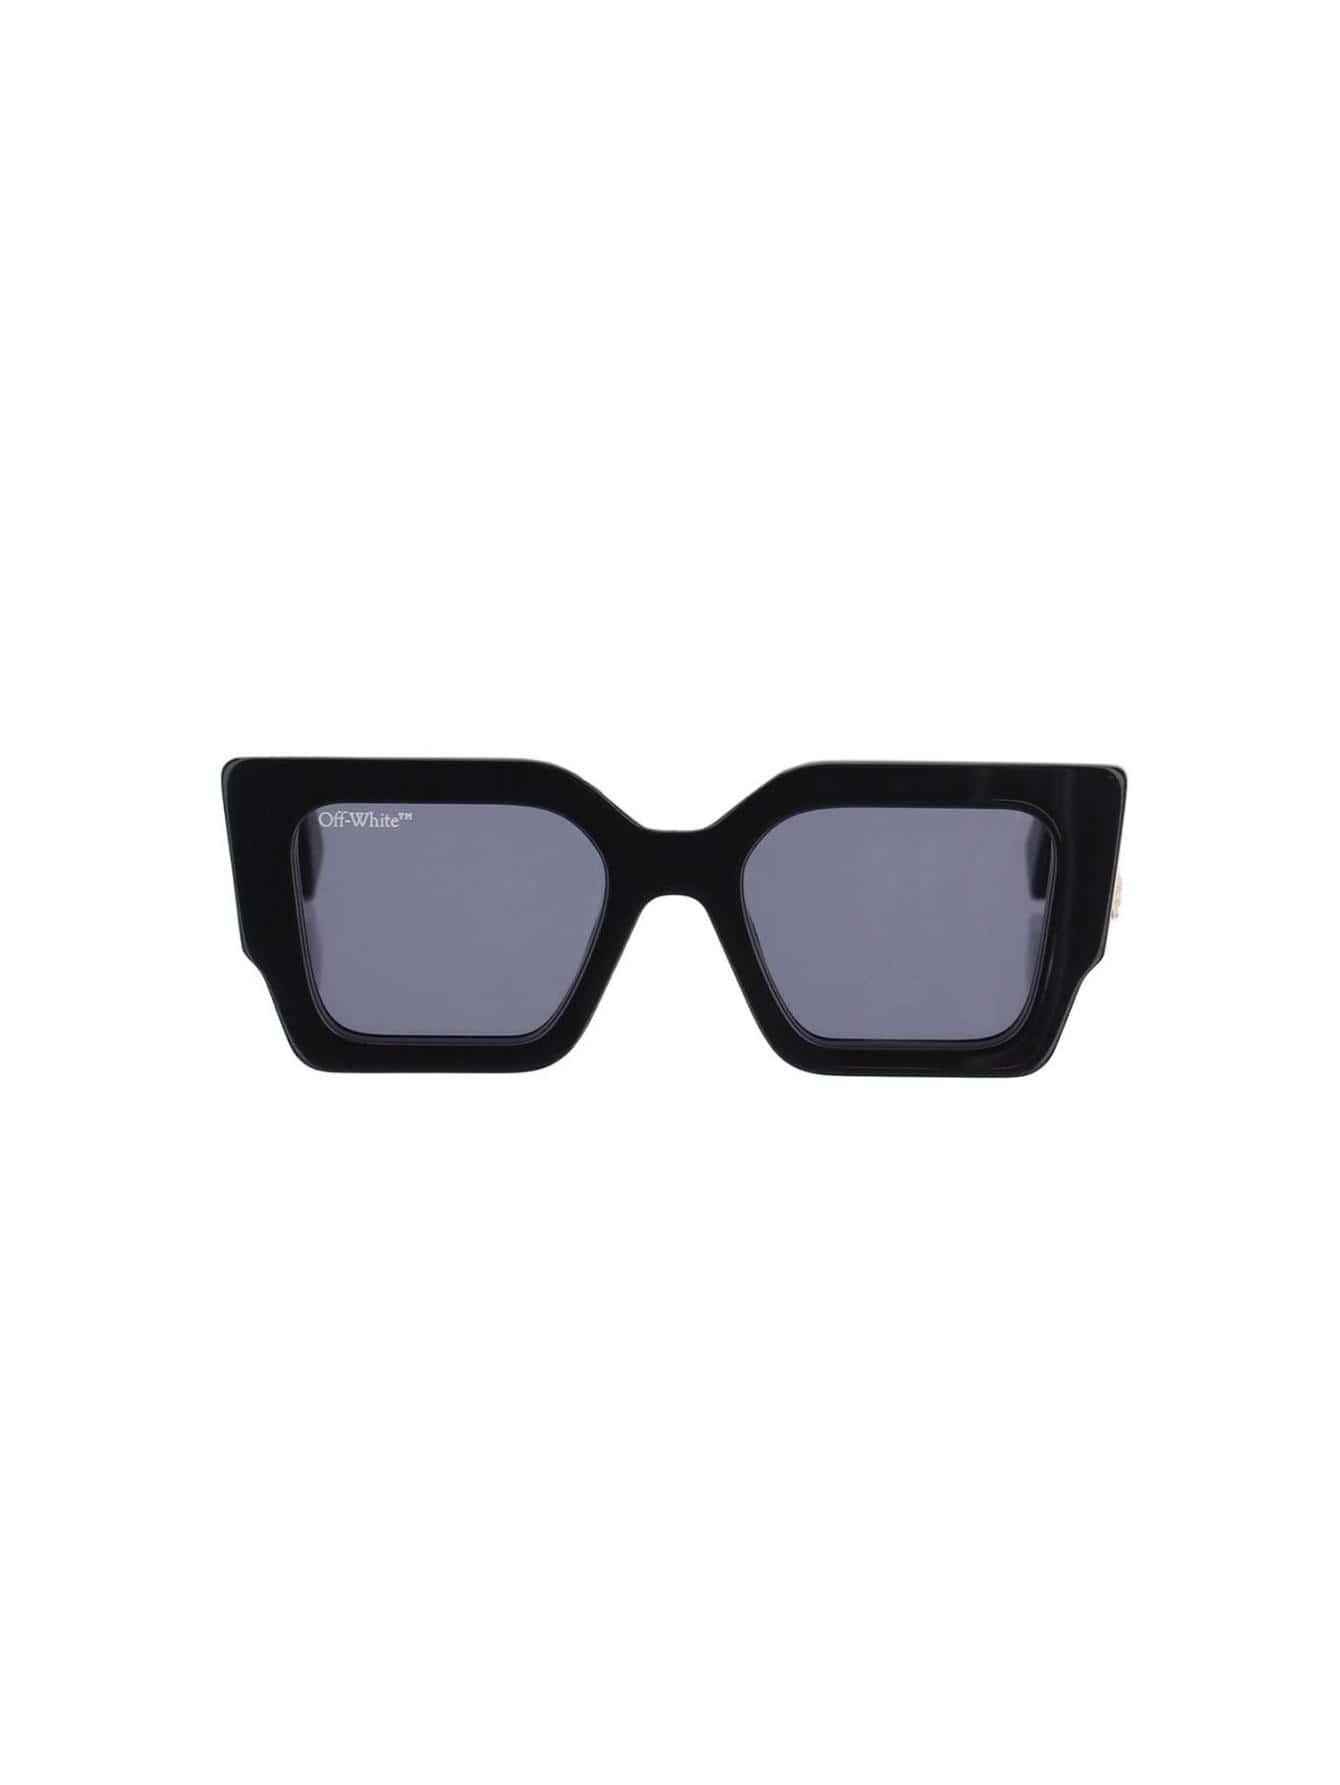 мужские солнцезащитные очки off white черные oeri094f23pla0010107 черный Женские солнцезащитные очки Off-White ЧЕРНЫЕ OERI003C99PLA0011007, черный